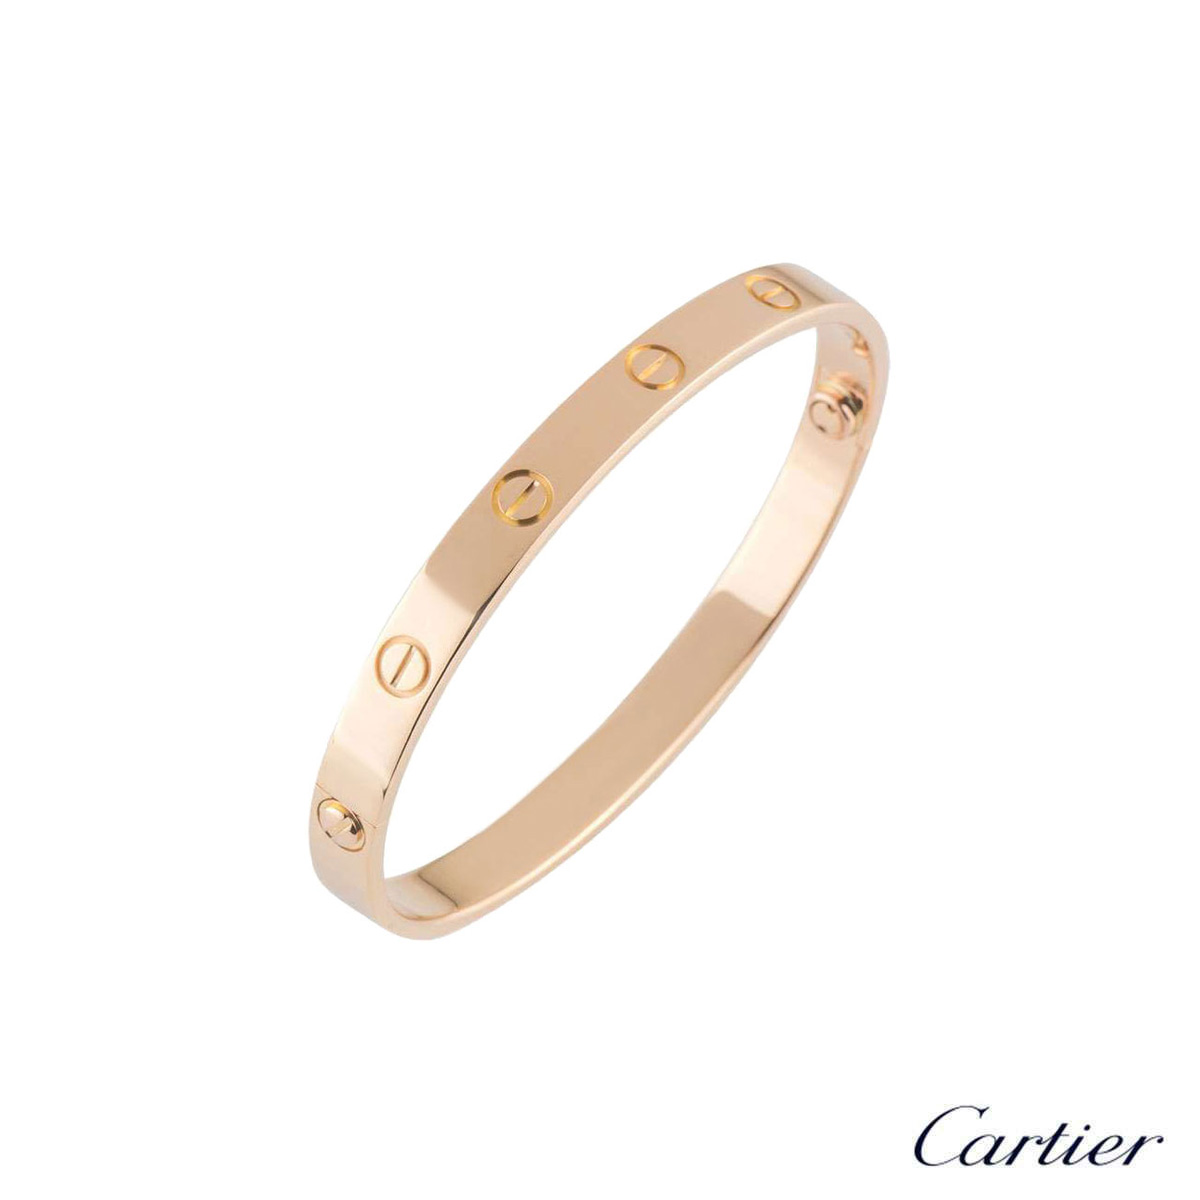 Cartier Love Bracelet Leather 1970s - Gisbert A. Joseph Watches